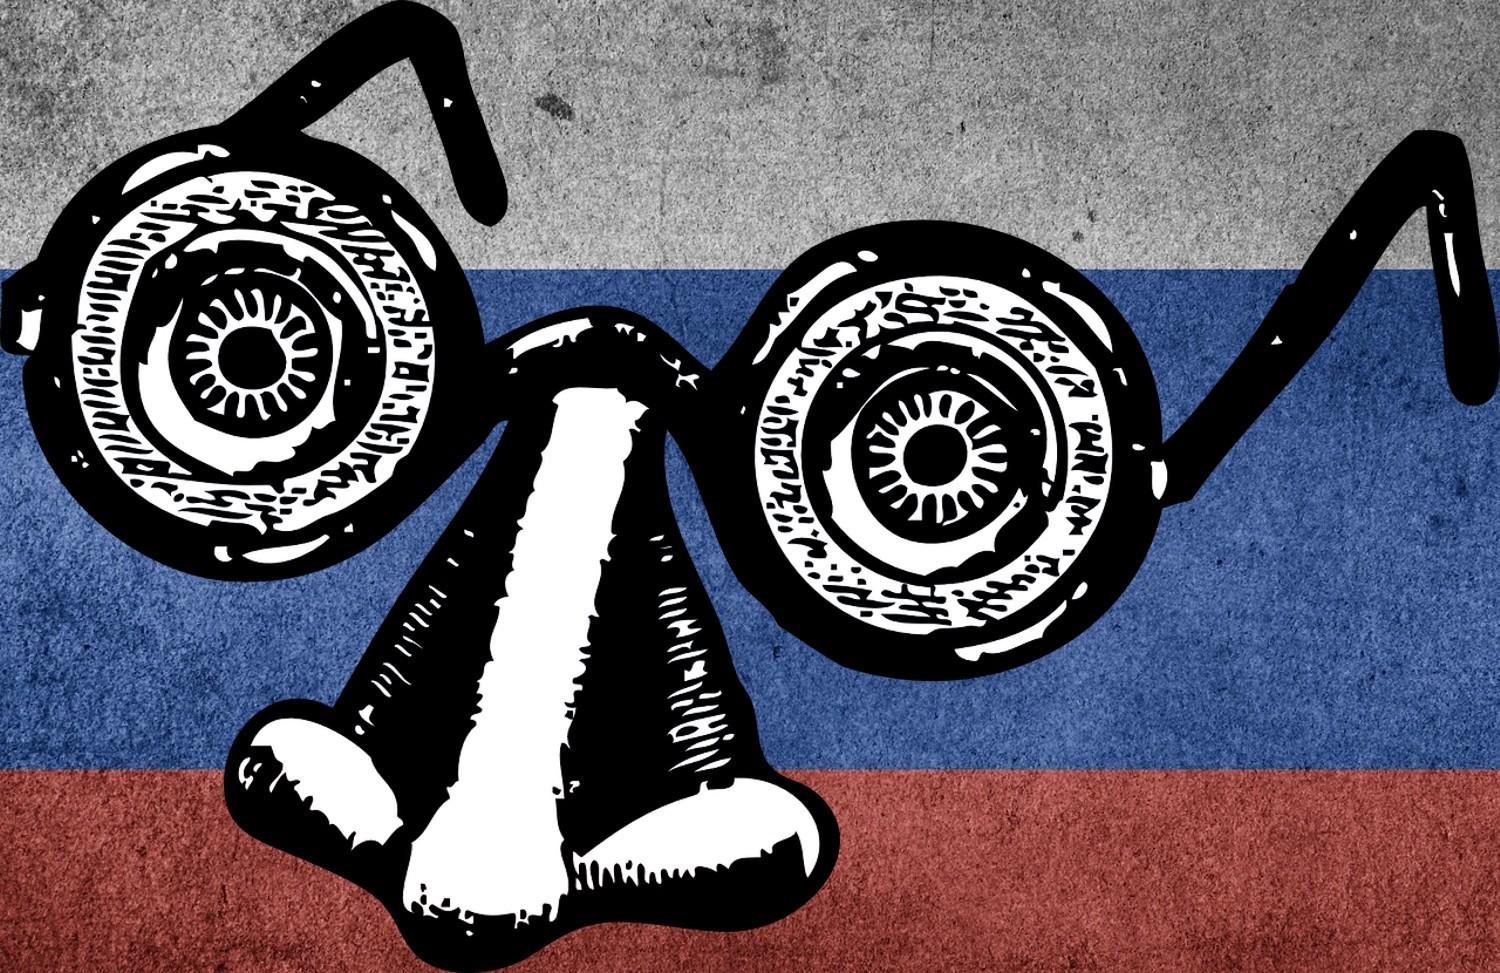 Чергова хвиля інформаційної кампанії про "секретні лабораторії США в Україні" почалася з РФ - ІМІ 9